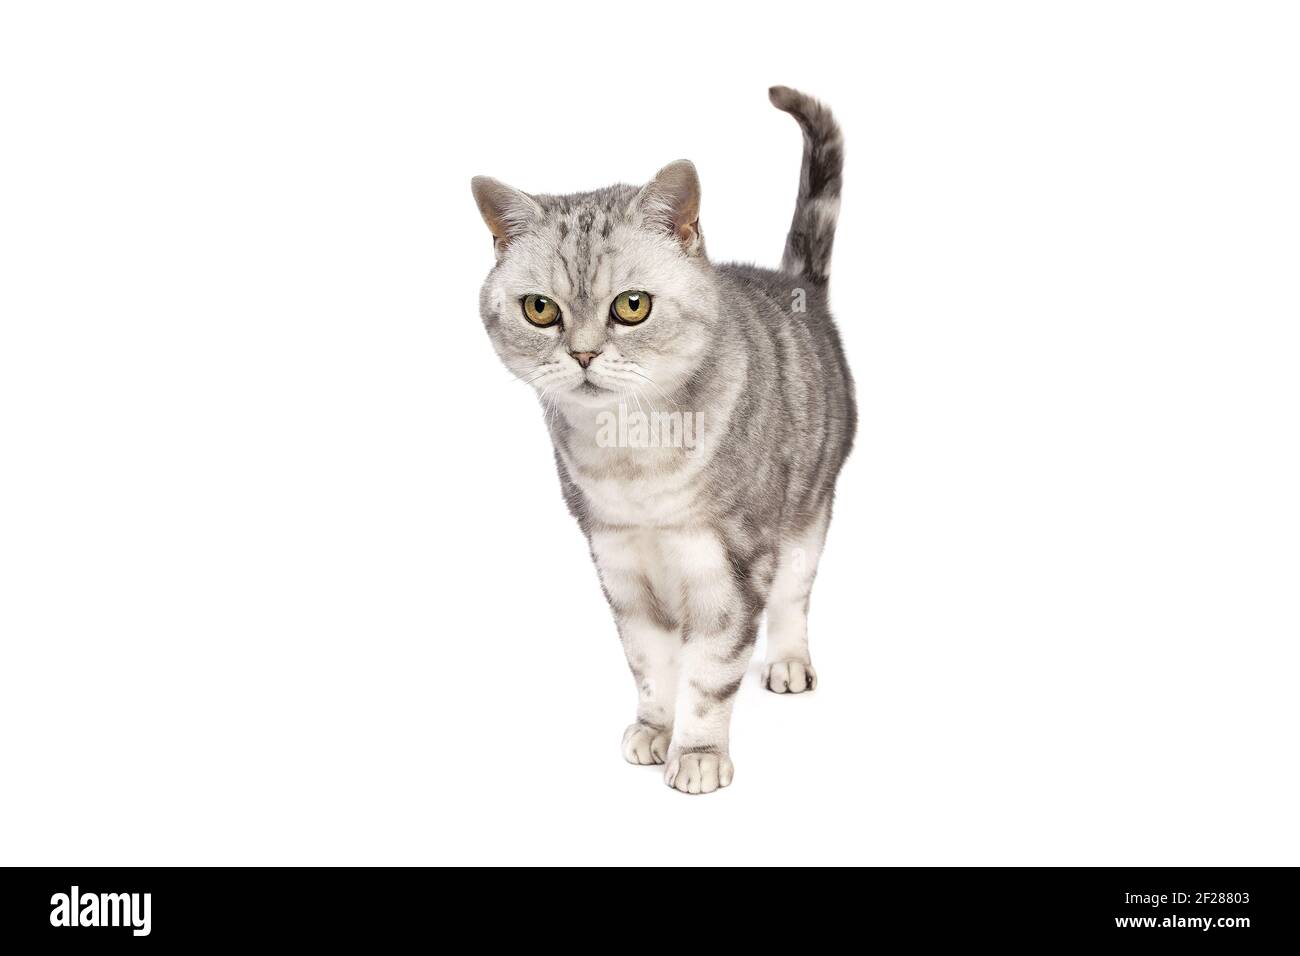 British Shorthaired cat Stock Photo